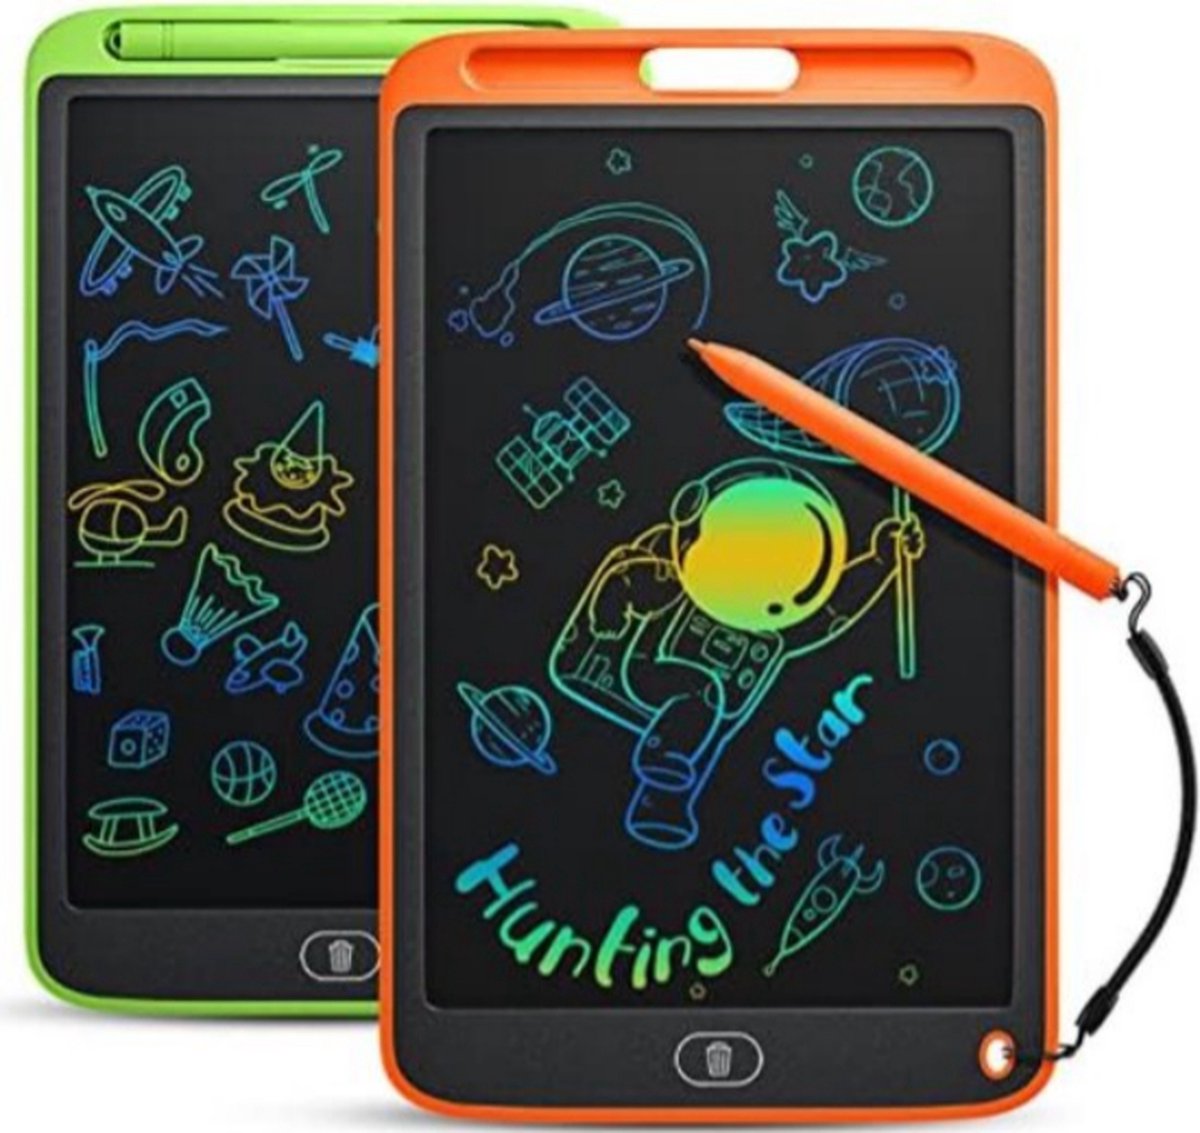 Tekentablet Kinderen - Tekentablet Met Scherm - Grafische Tablet - set van 2 - Groen|Oranje - 10inch